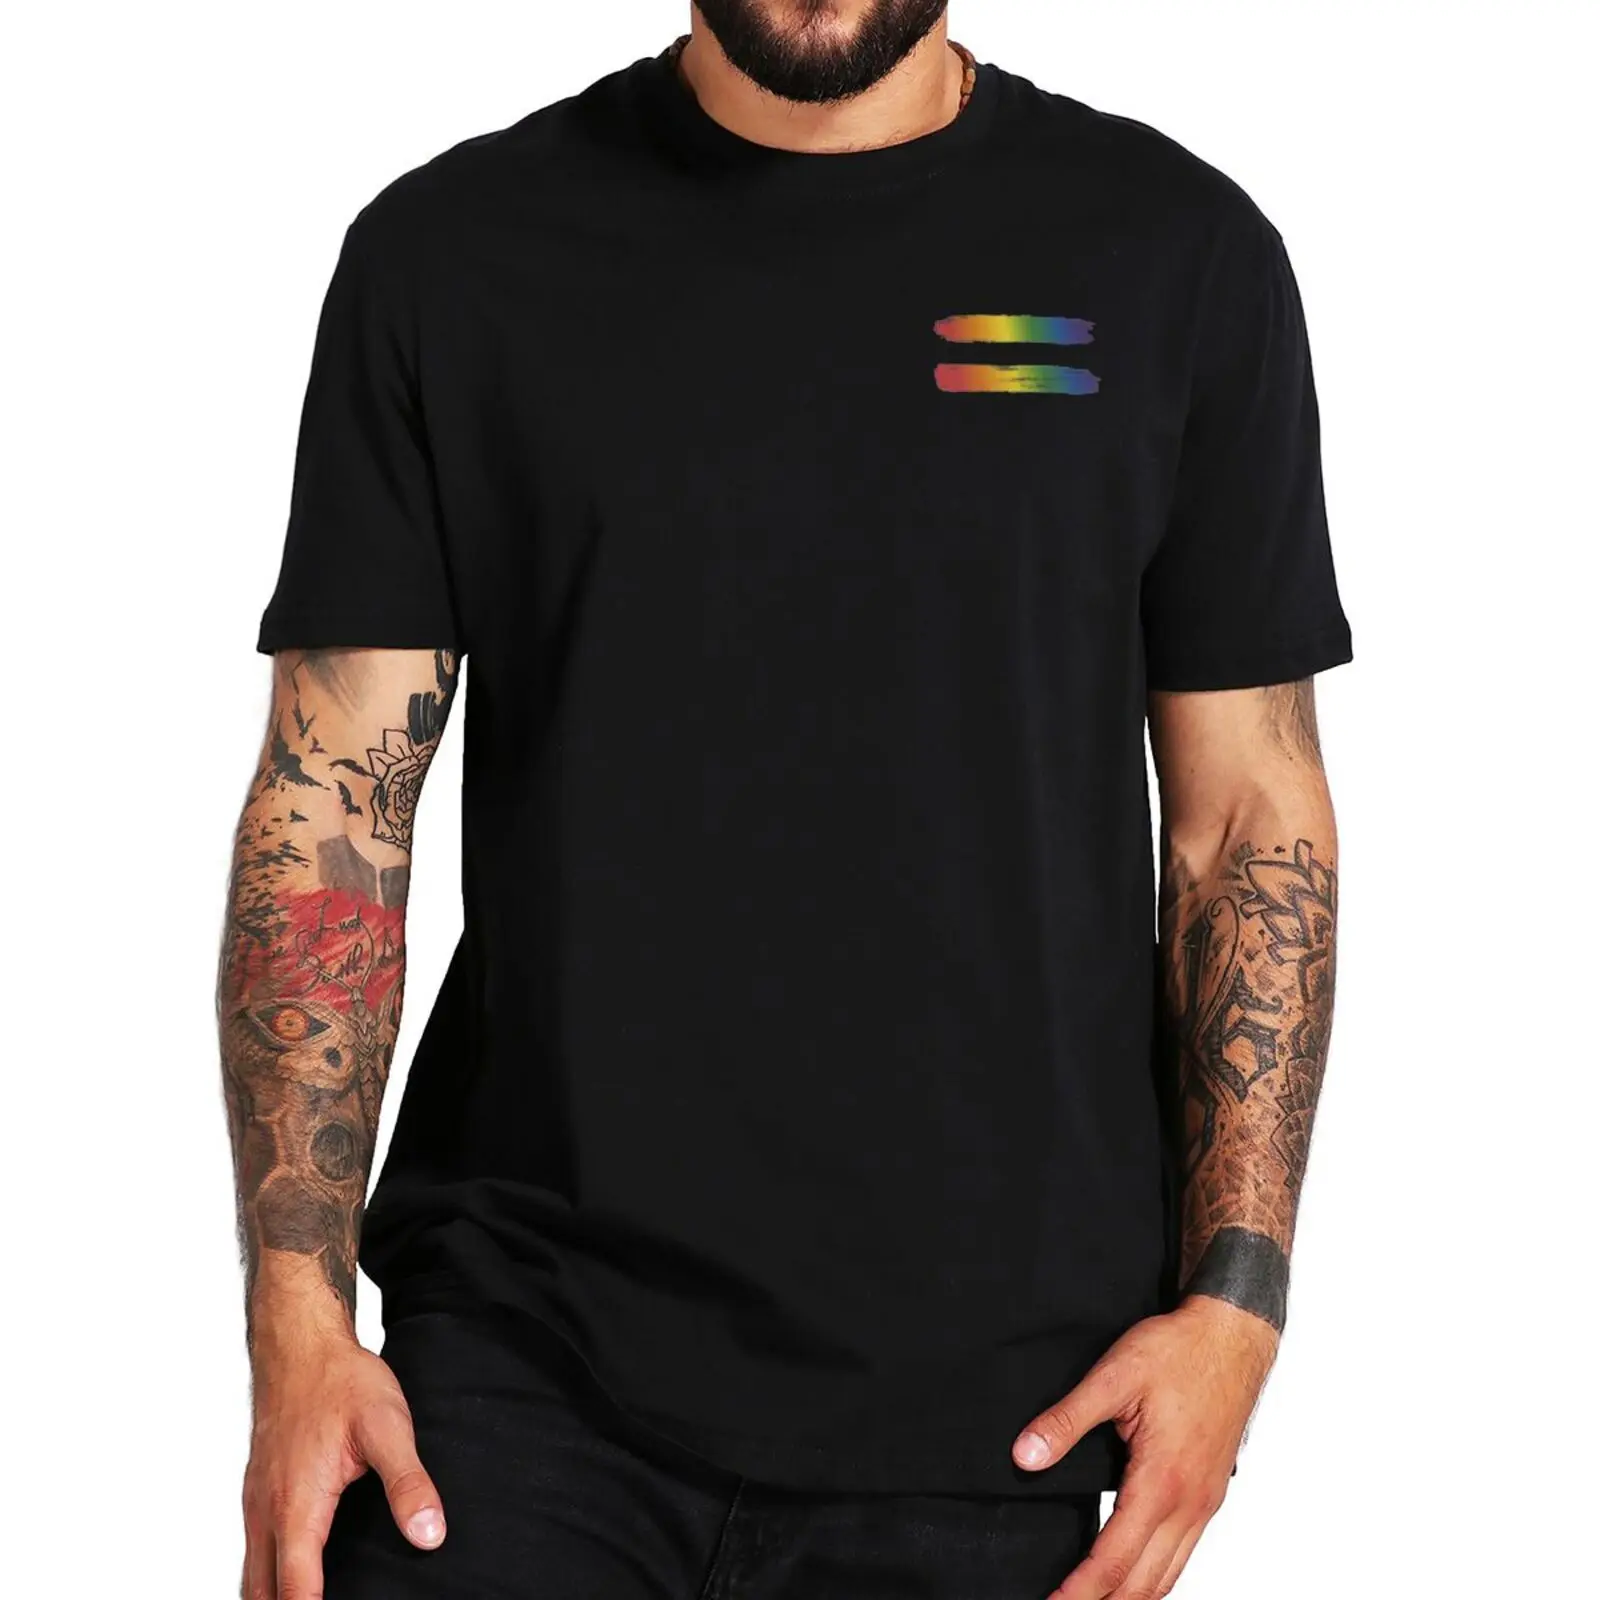 

Футболка ЛГБТ с радужным флагом для геев и лесбиянок, 100% хлопок